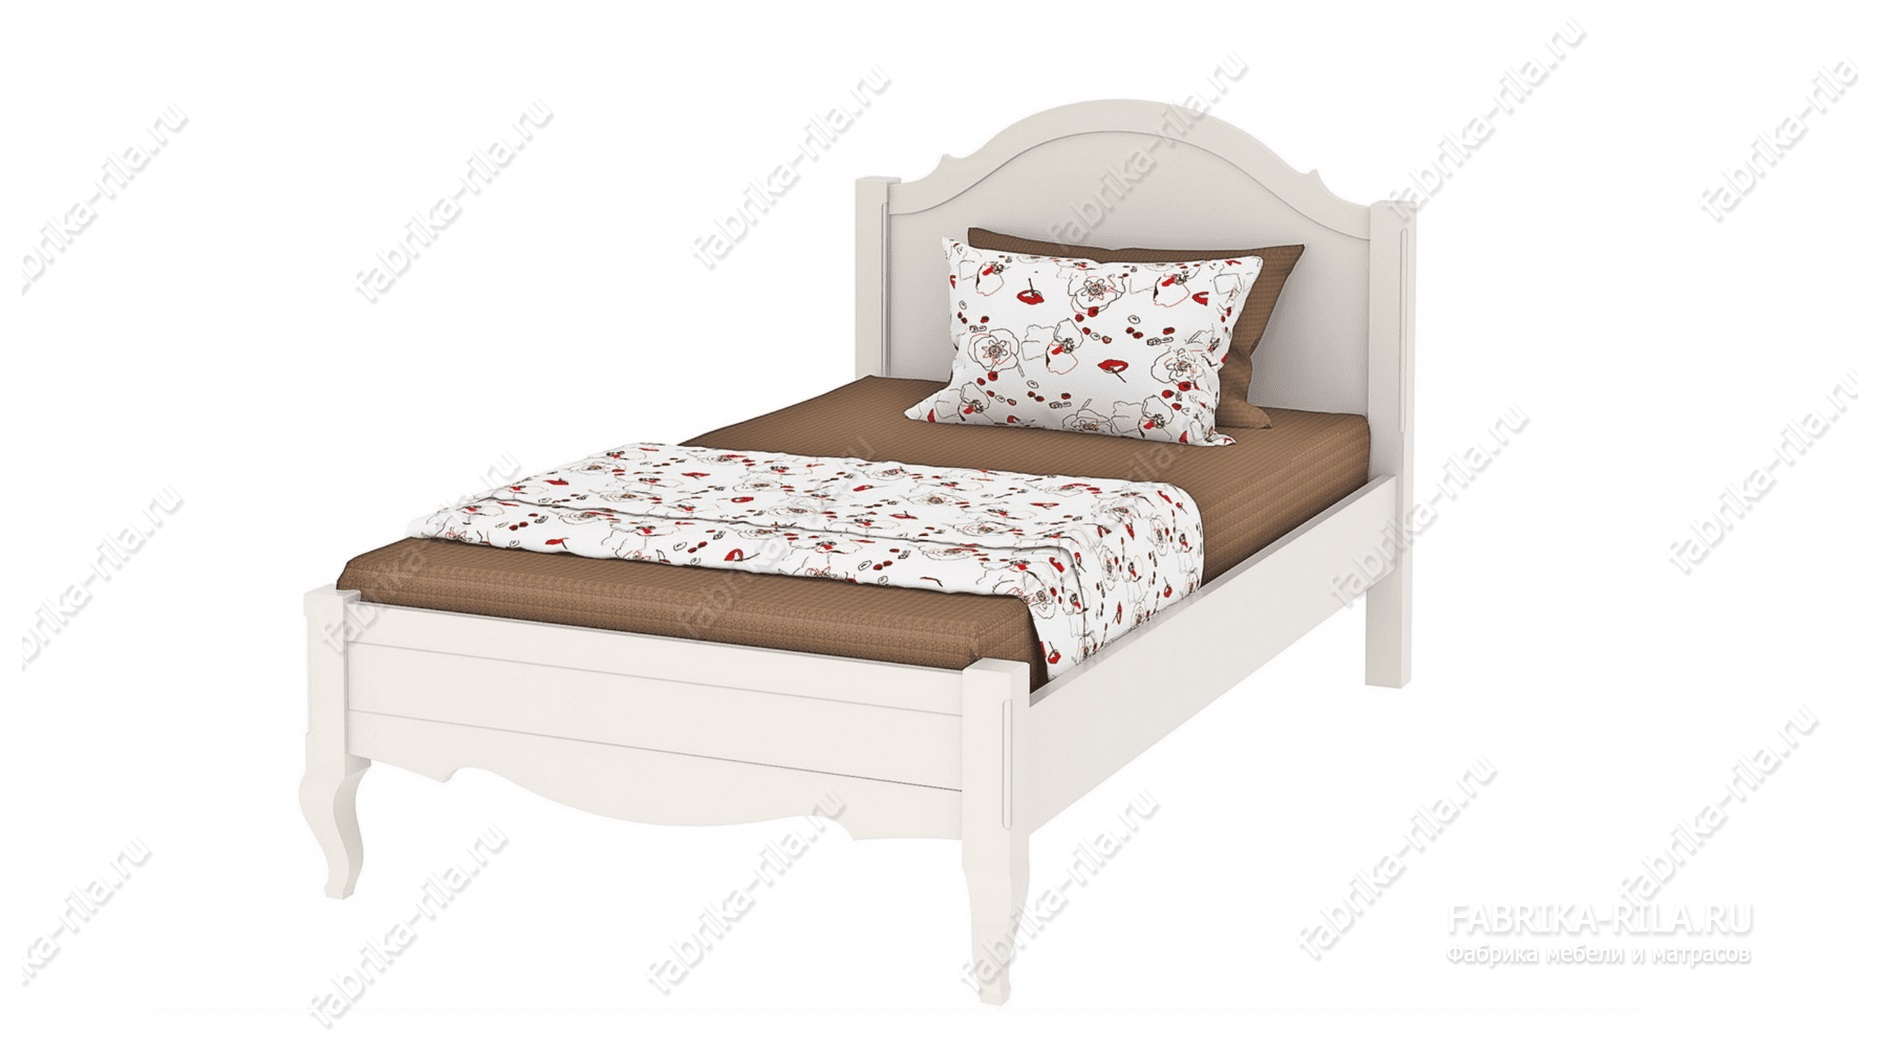 Кровать Palmira-1 — 120x200 см. из сосны